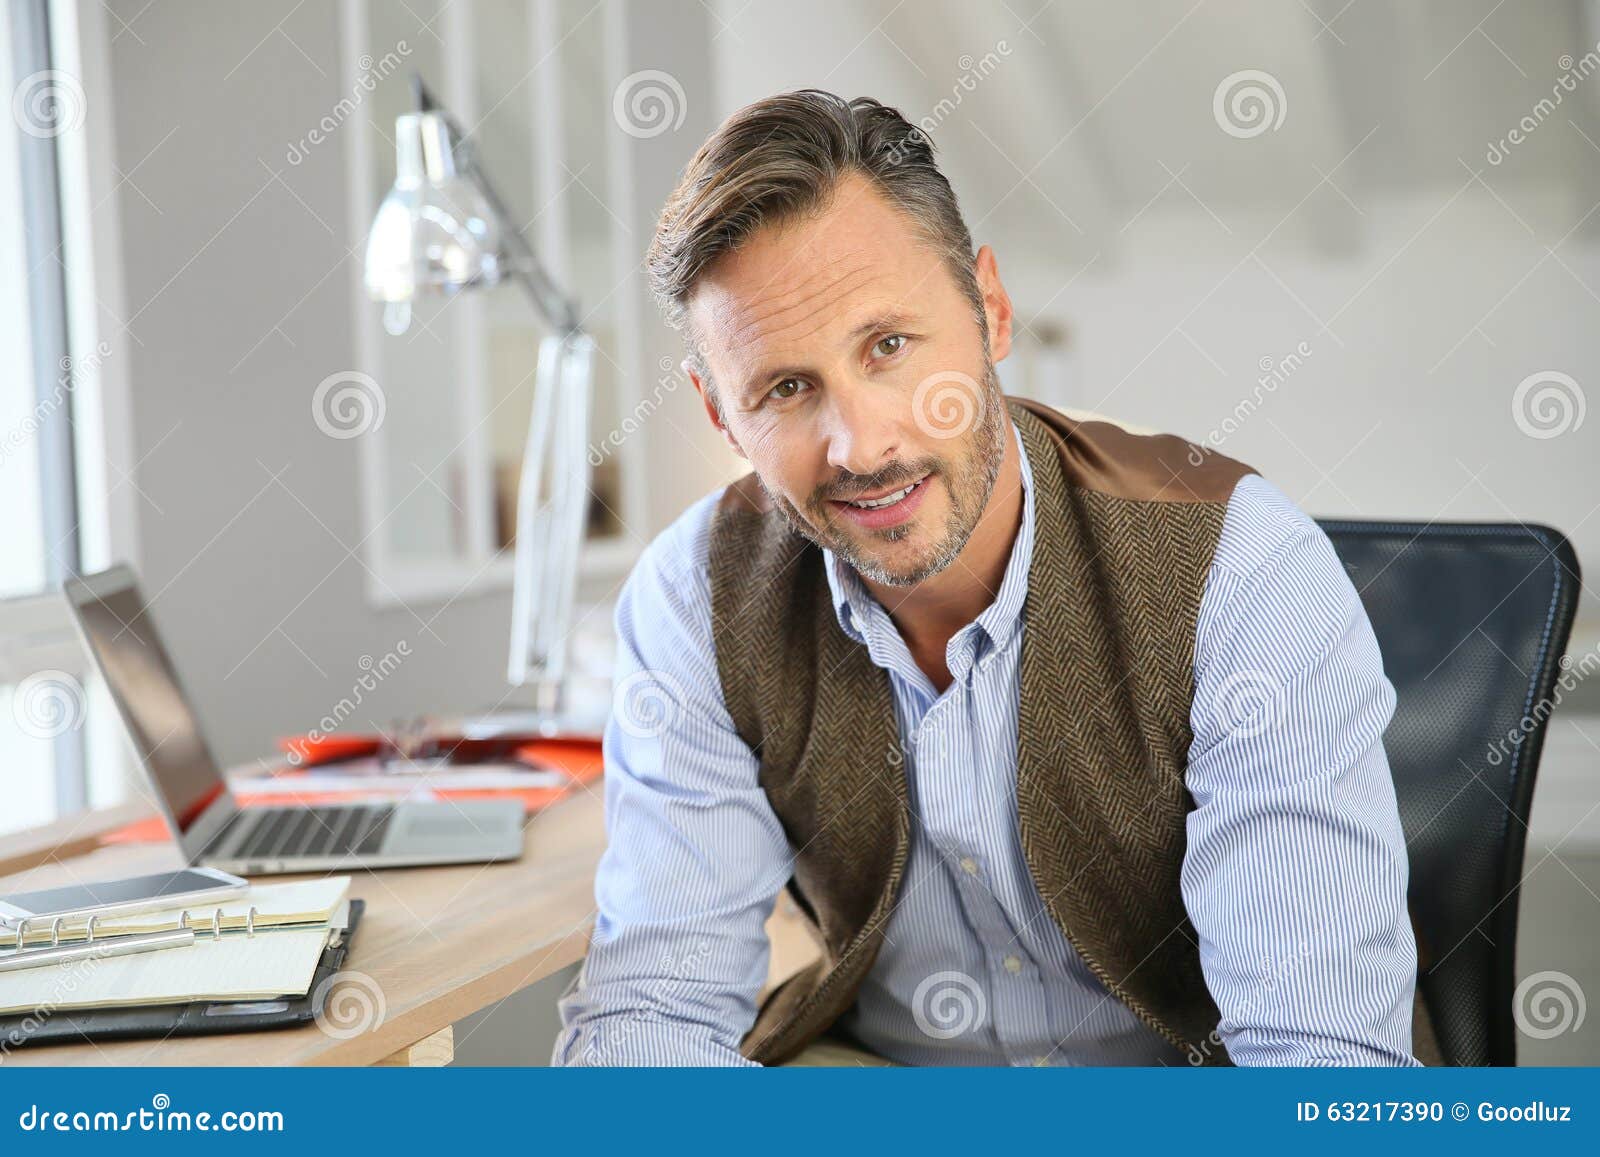 Retrato do homem de negócios de meia idade de sorriso no escritório. Homem considerável que senta-se no escritório